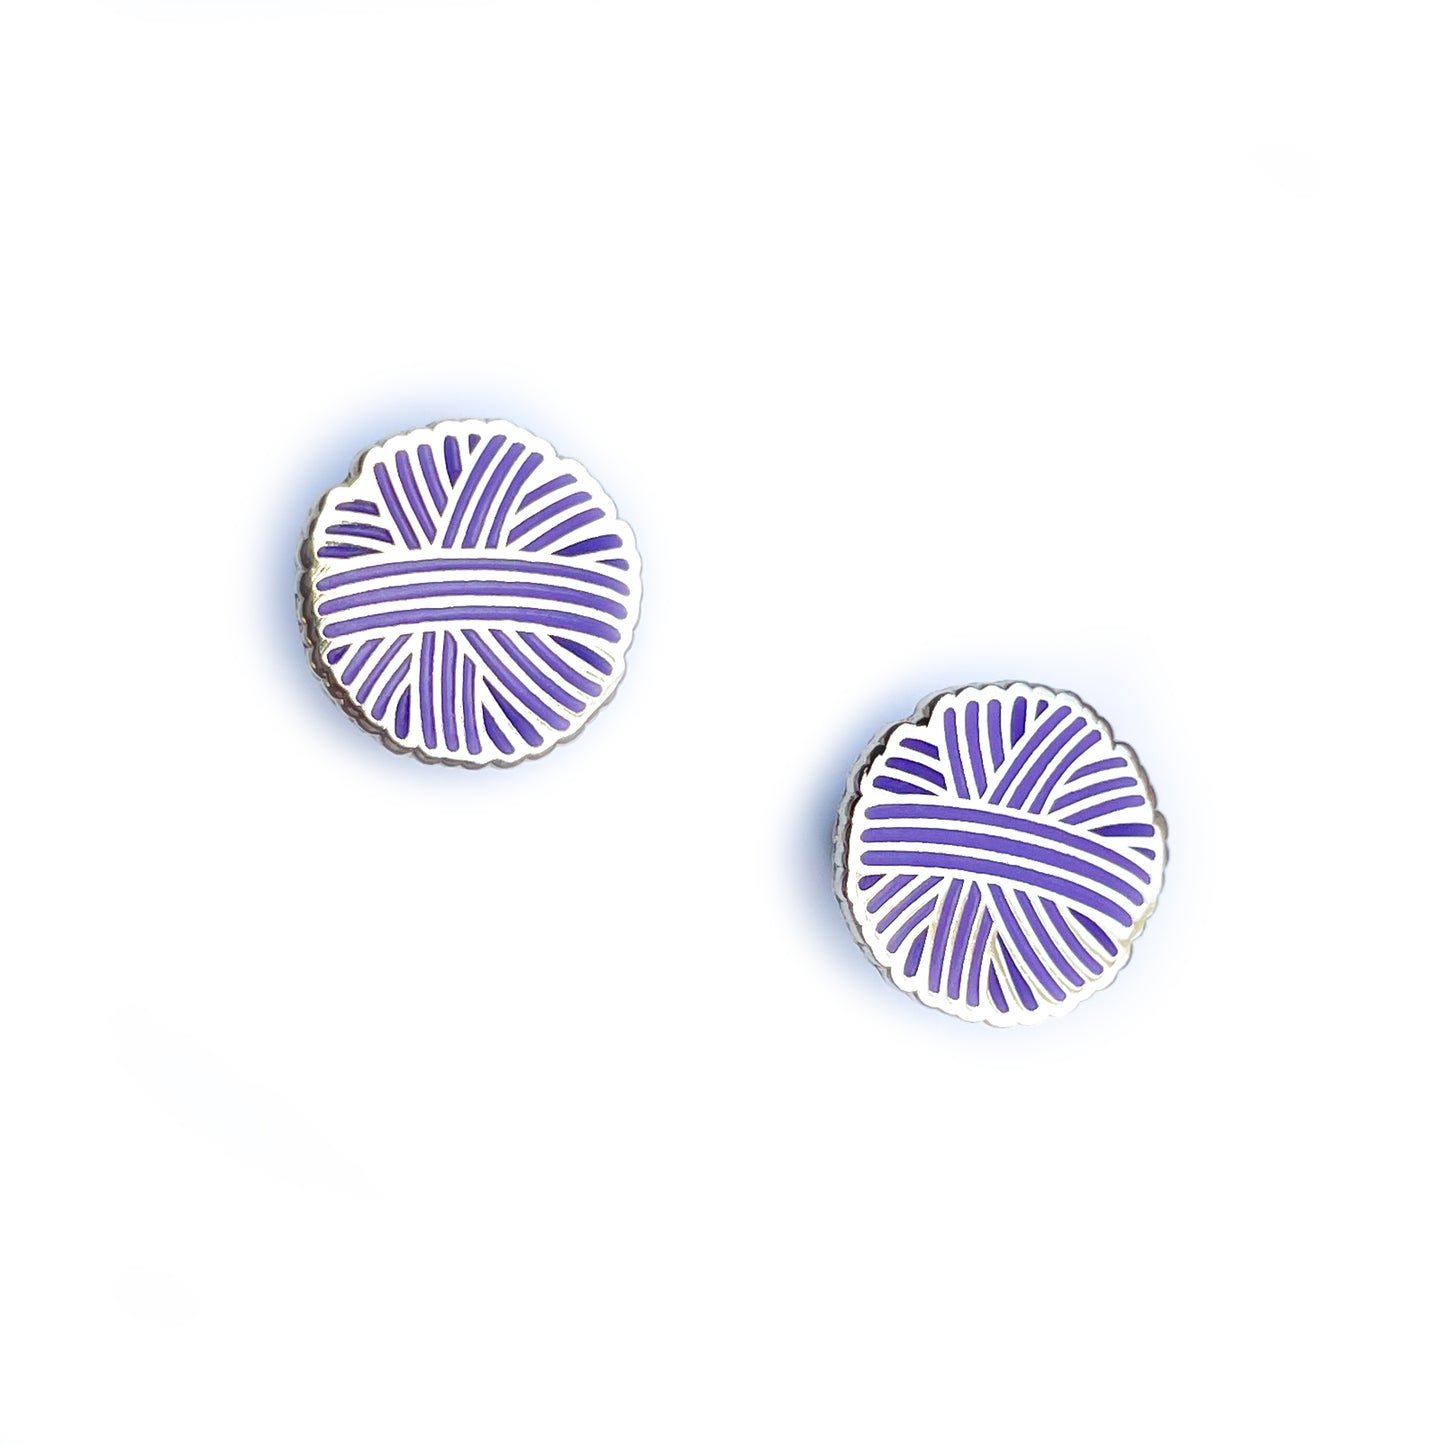 Two identical stud earrings shaped like purple yarn balls